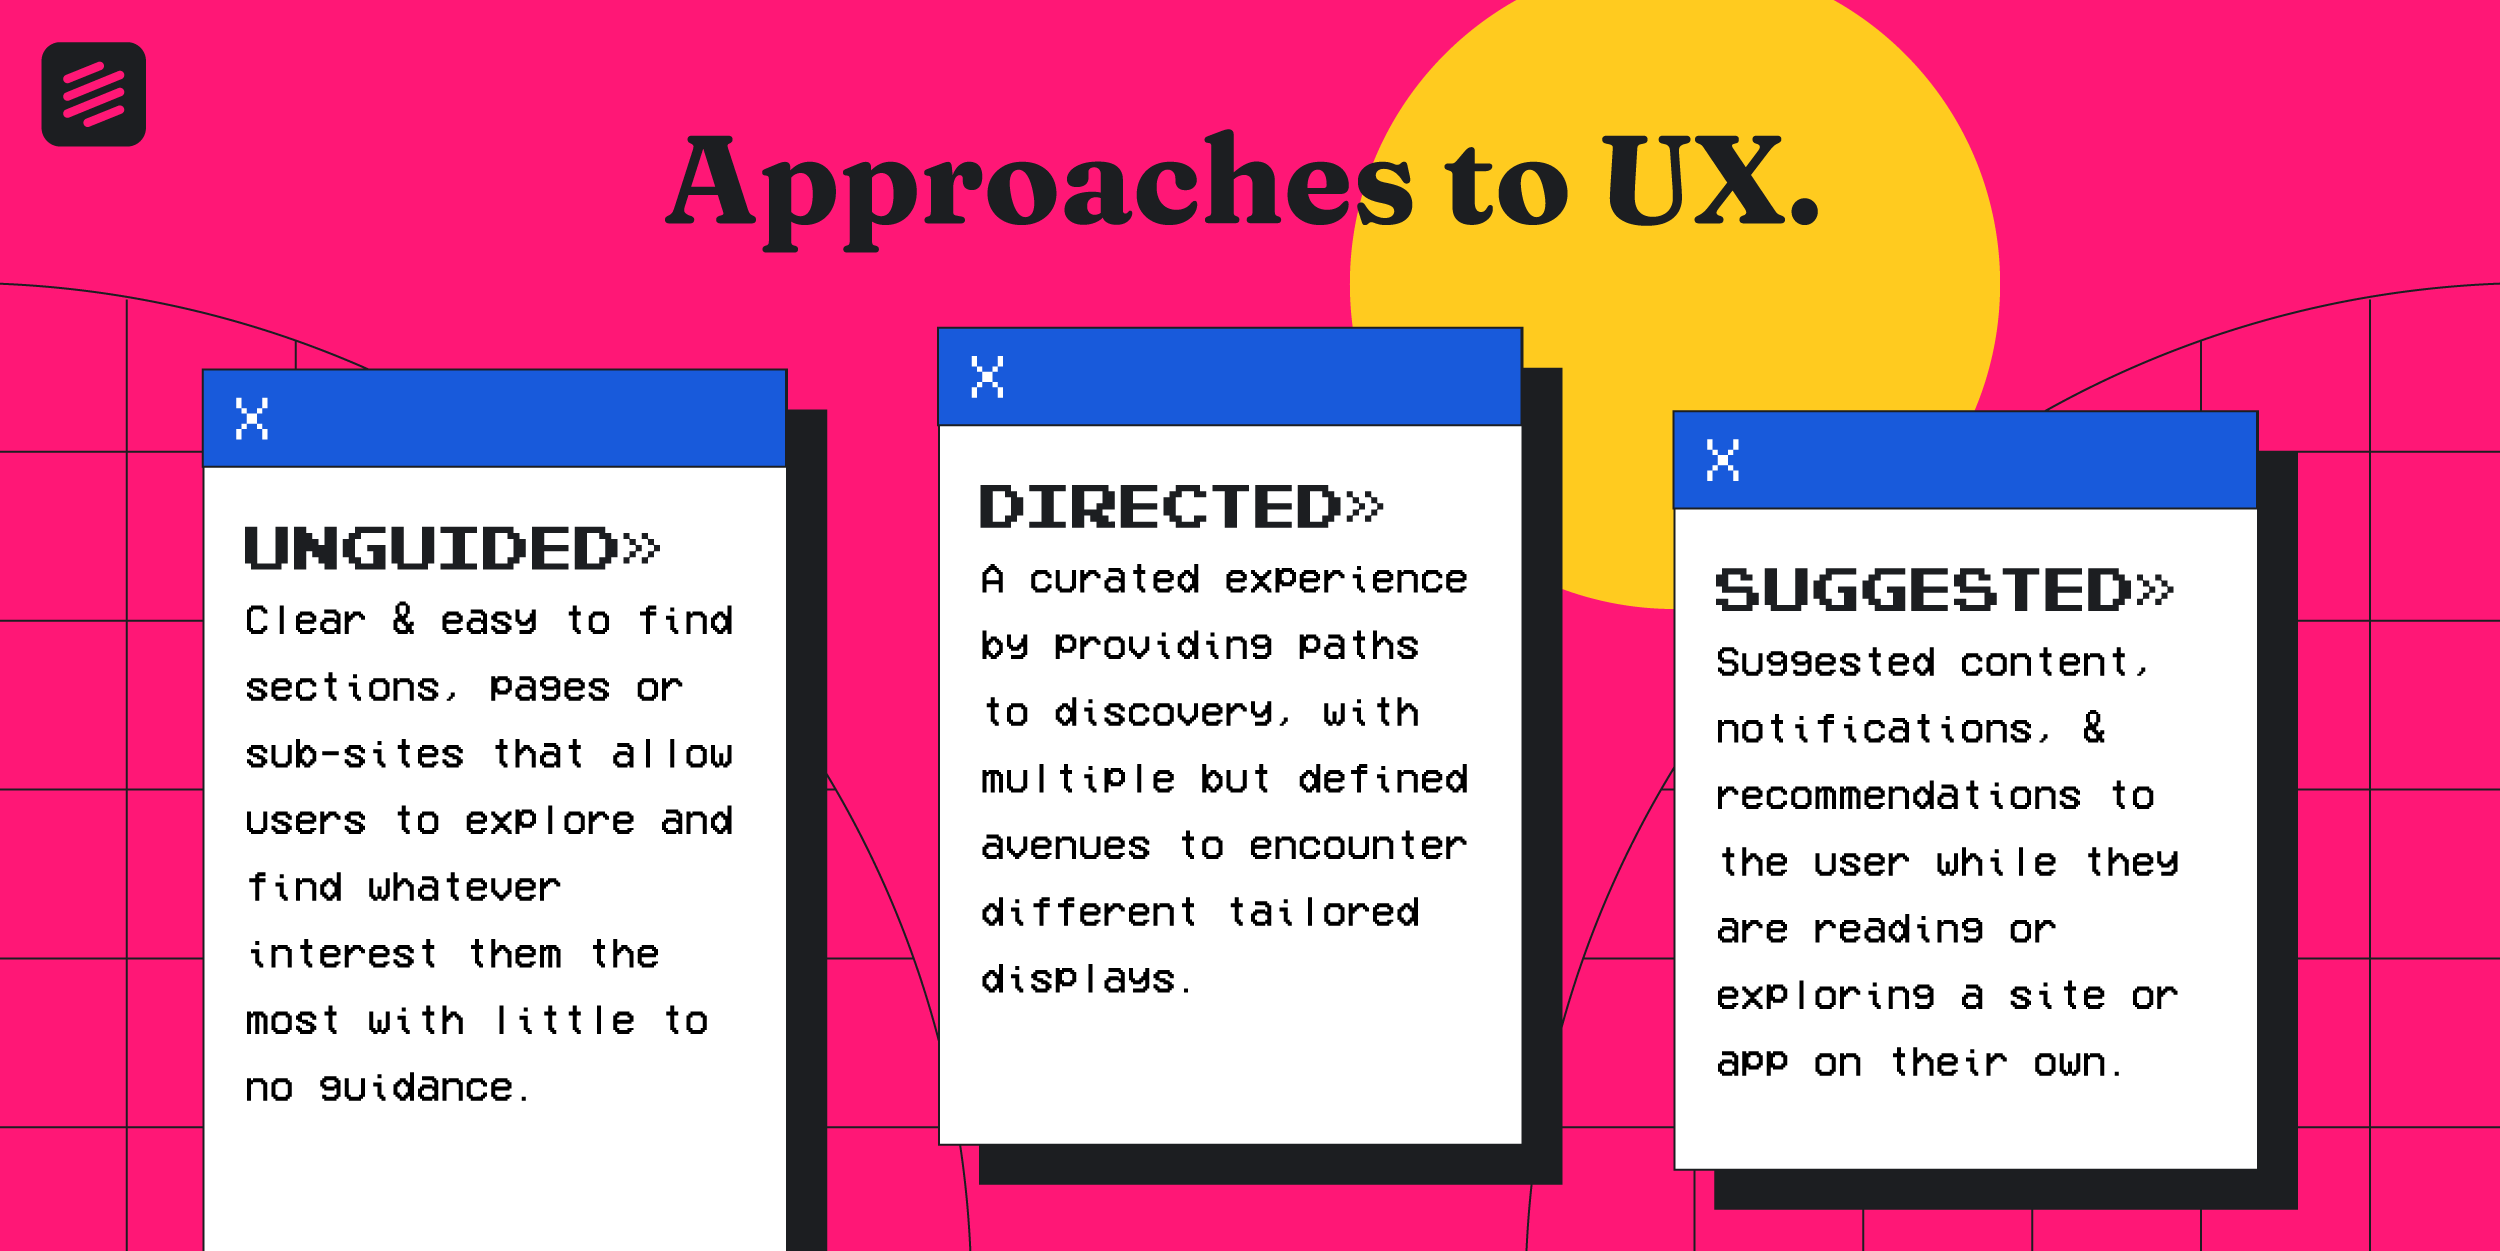 UX improvements